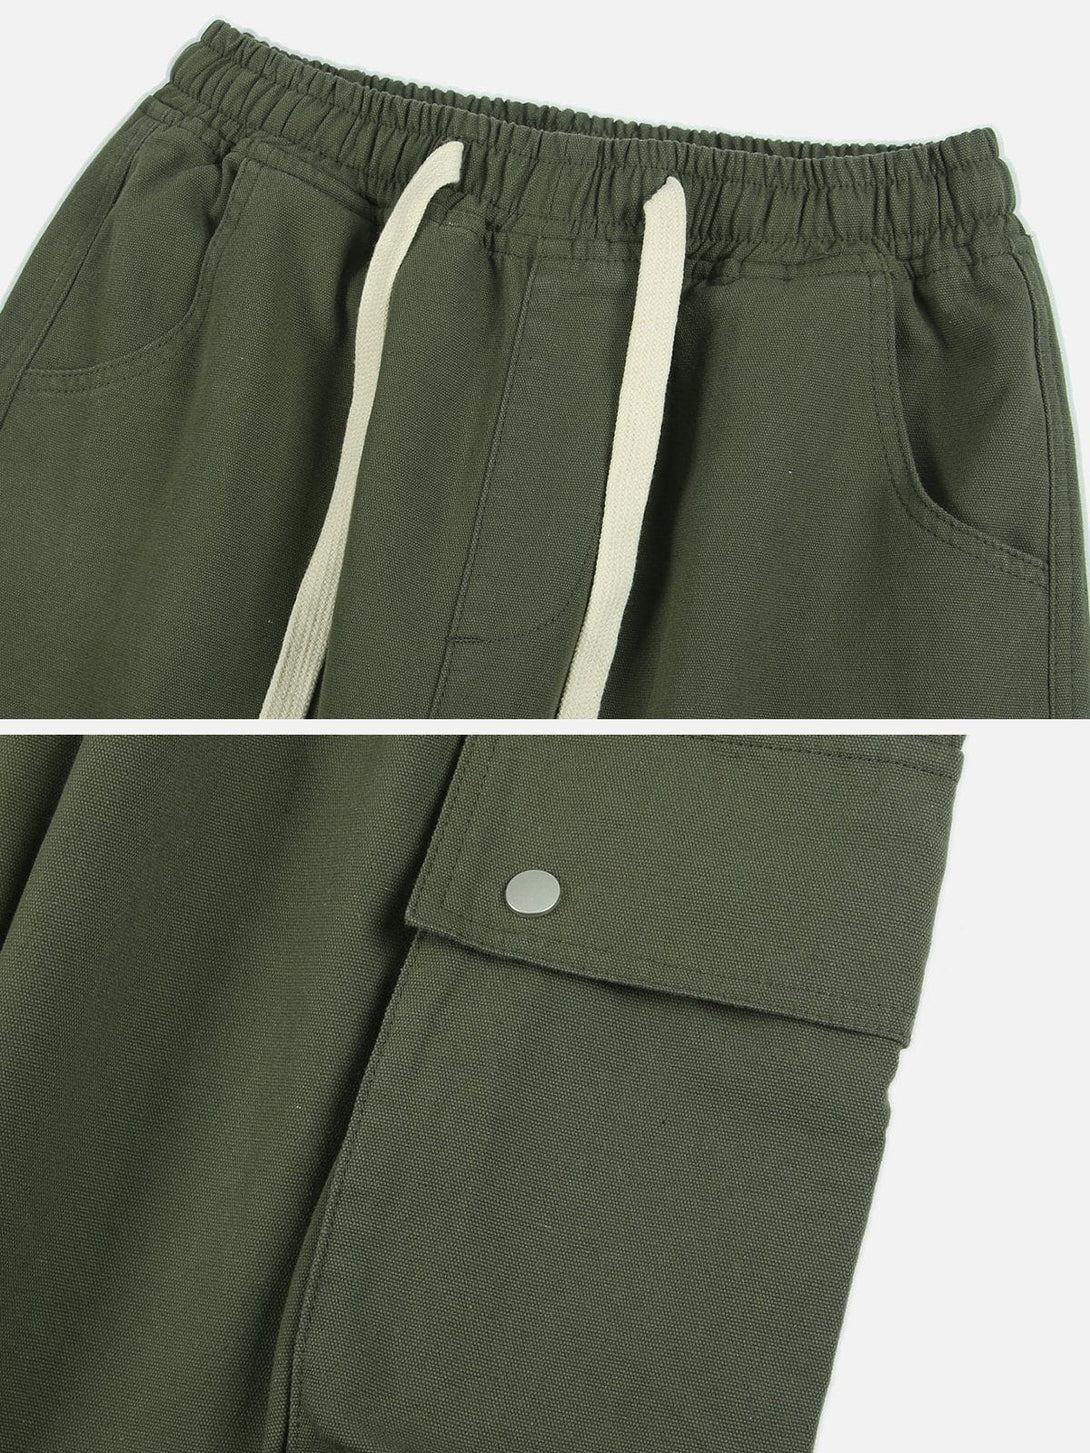 Levefly - Large Pocket Large Drawstring Pants - Streetwear Fashion - levefly.com